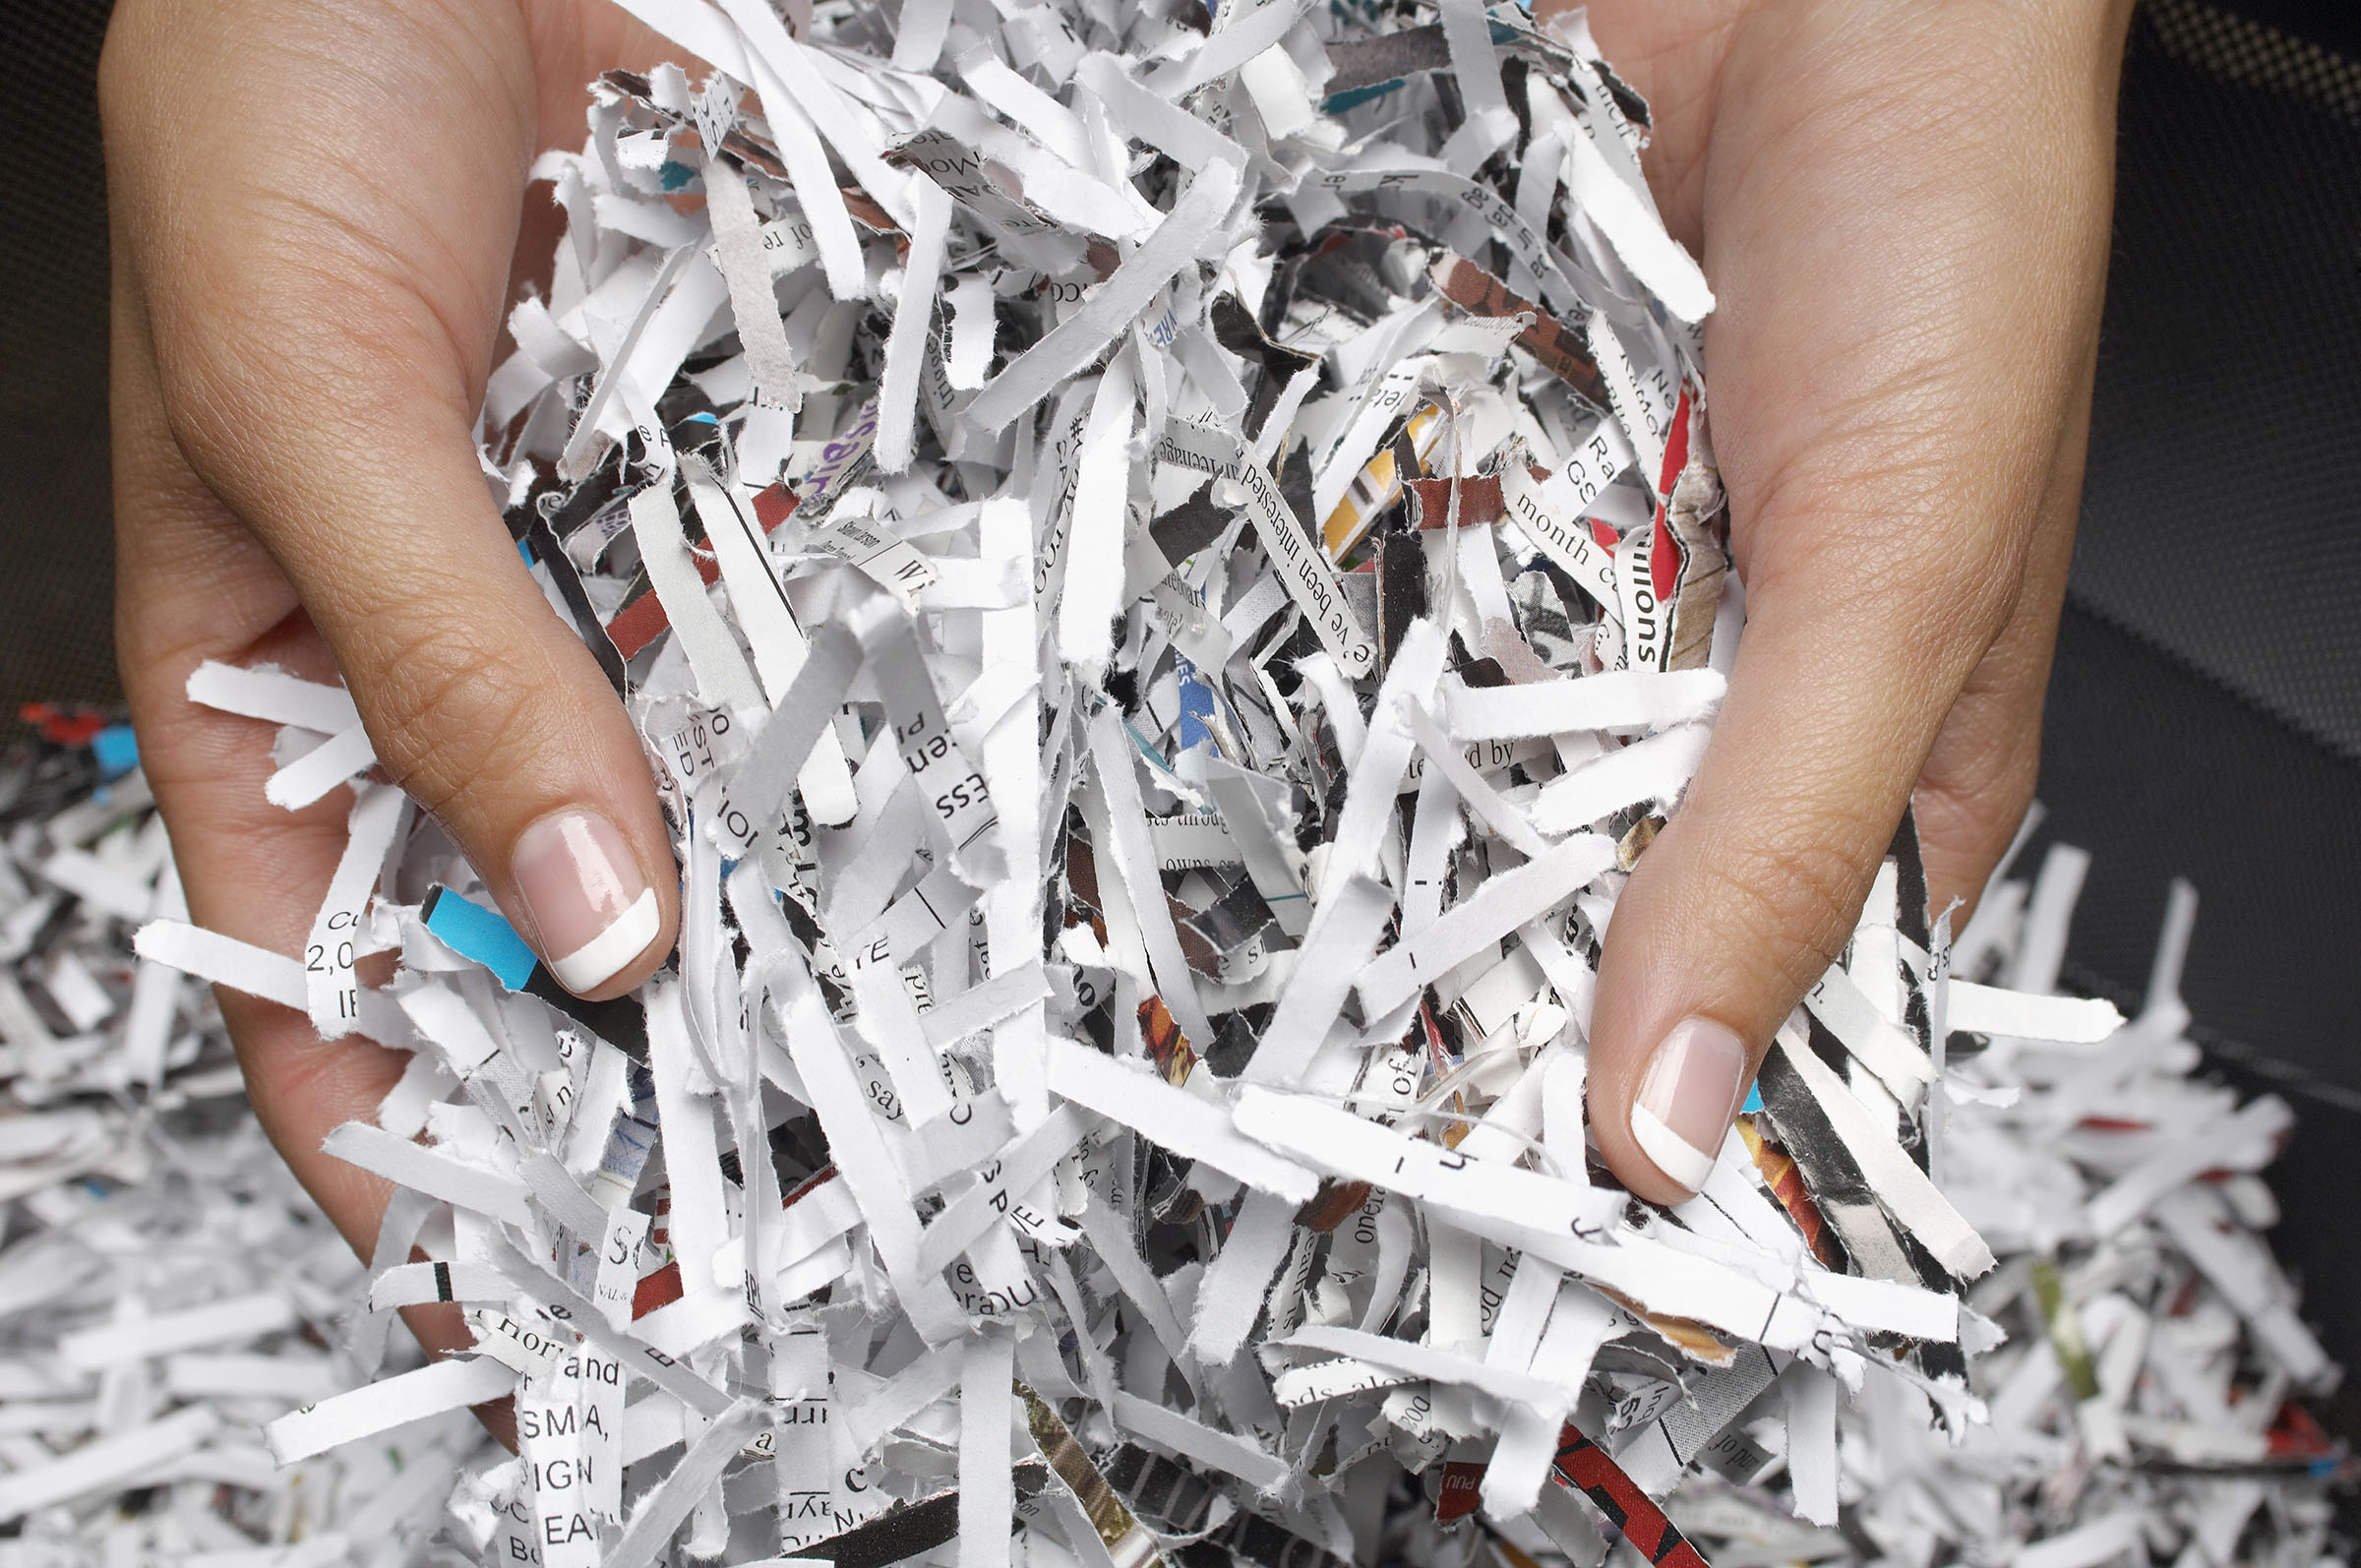 Hands holding shredded paper